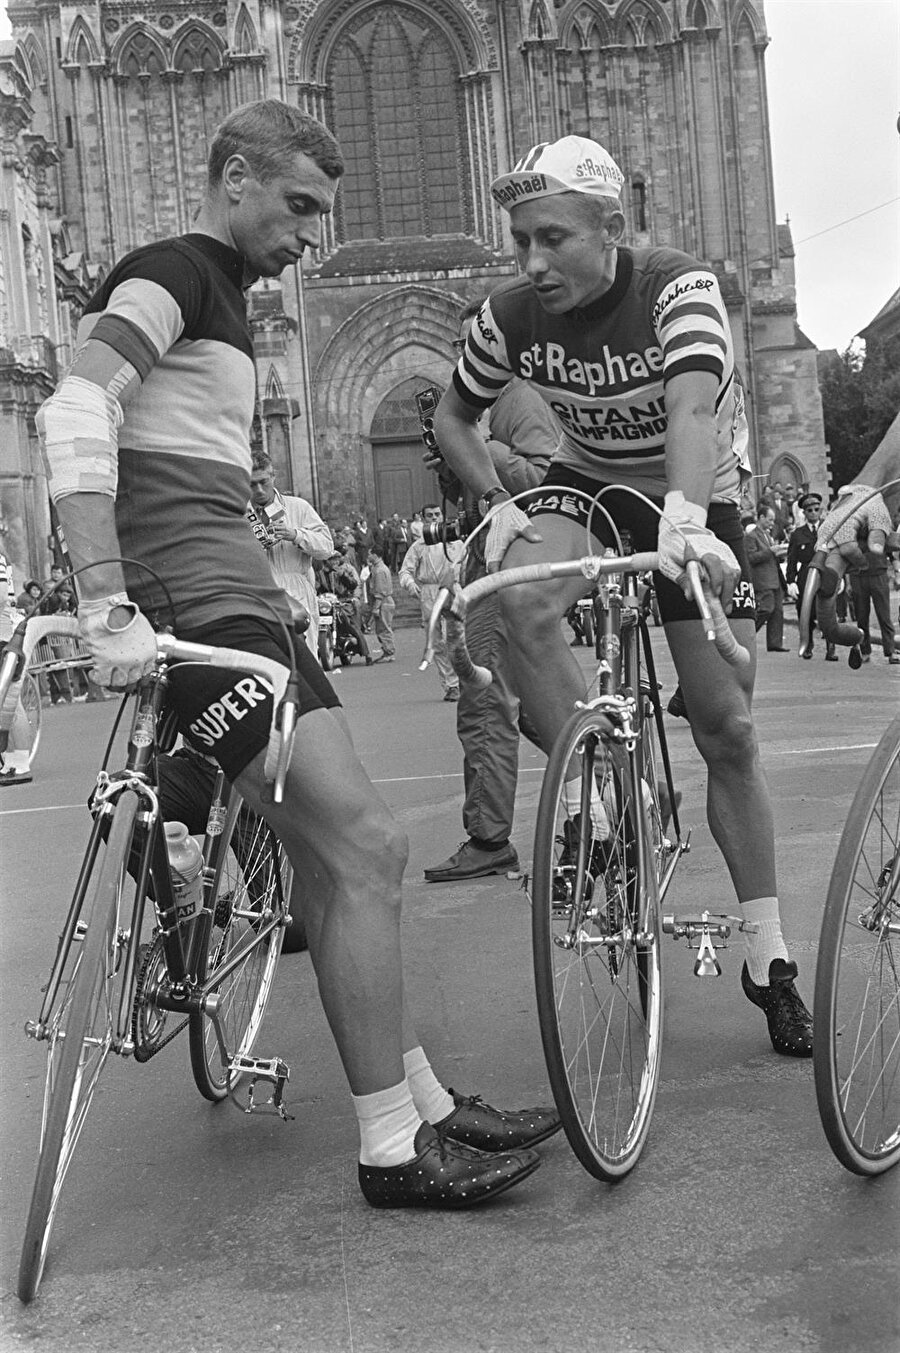 İki yıl askerlik yaptı

                                    
                                    
                                    
                                    
                                    Anquetil, 1954'te iki yıl sürecek askerlik görevini yapmak için Richepanse de Rouen kışlasına gitti. 
                                
                                
                                
                                
                                